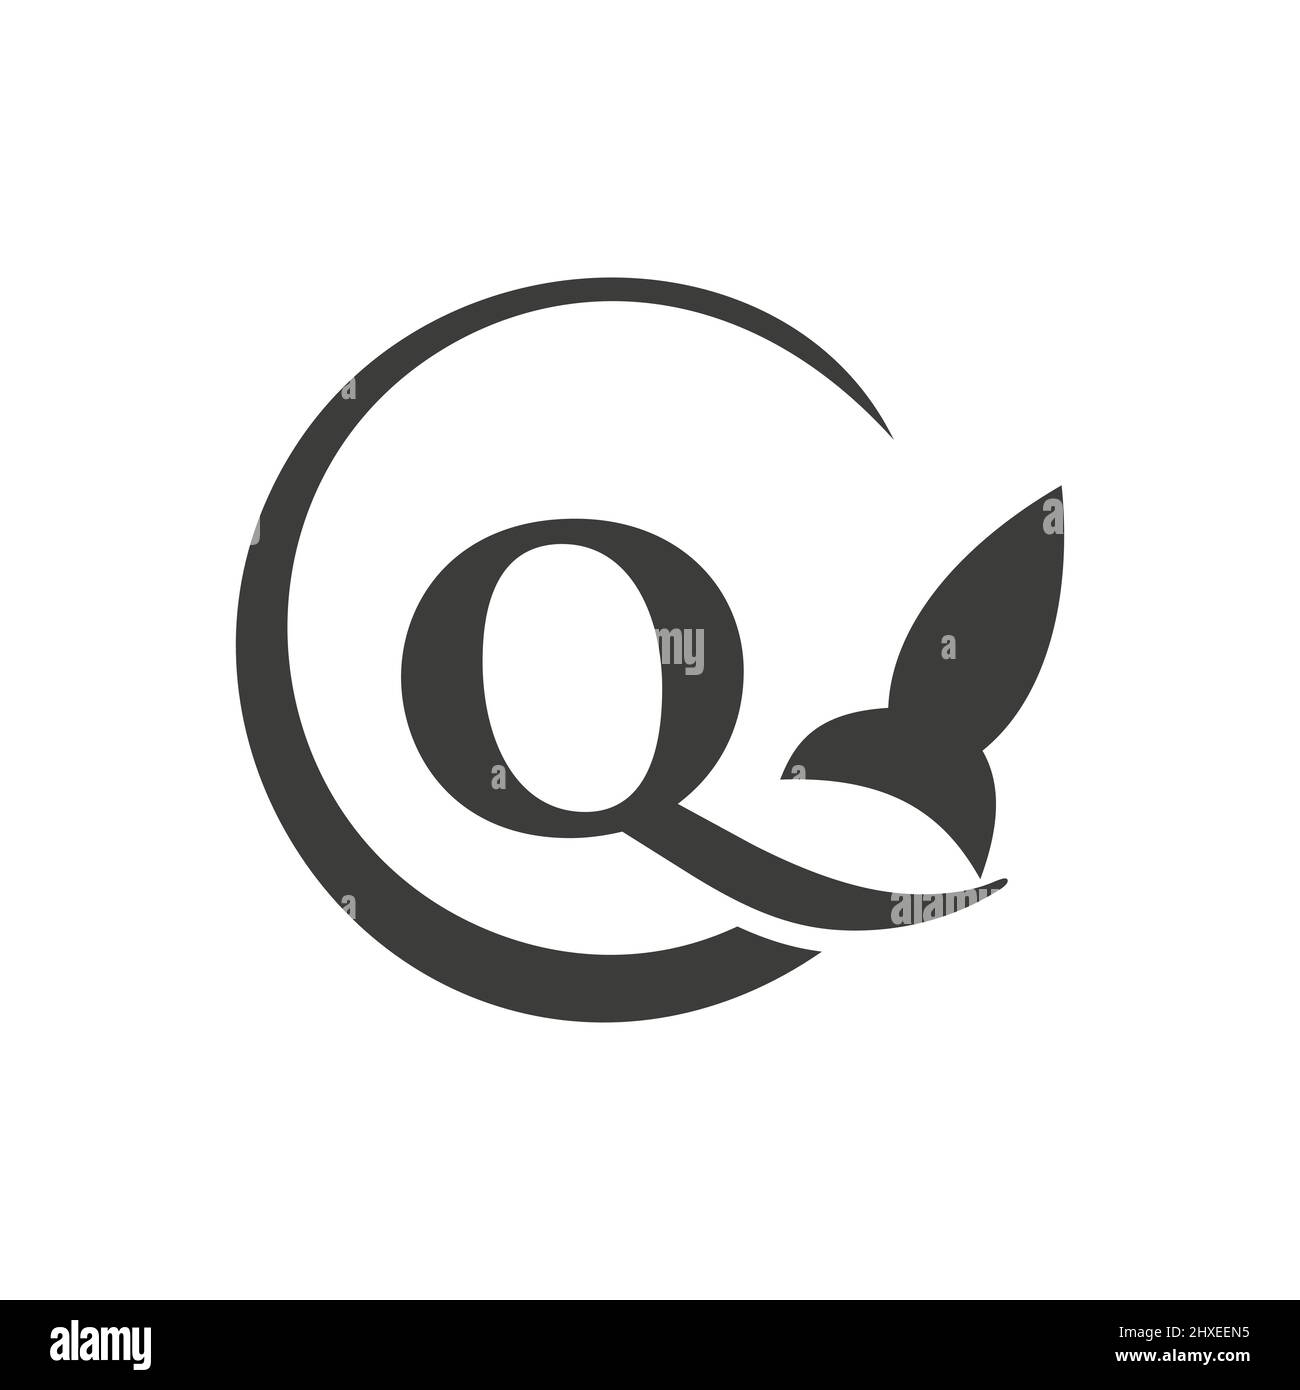 Travel Logo On Letter Q Concept. Letter Q Travel Logo Vector Template Stock Vector